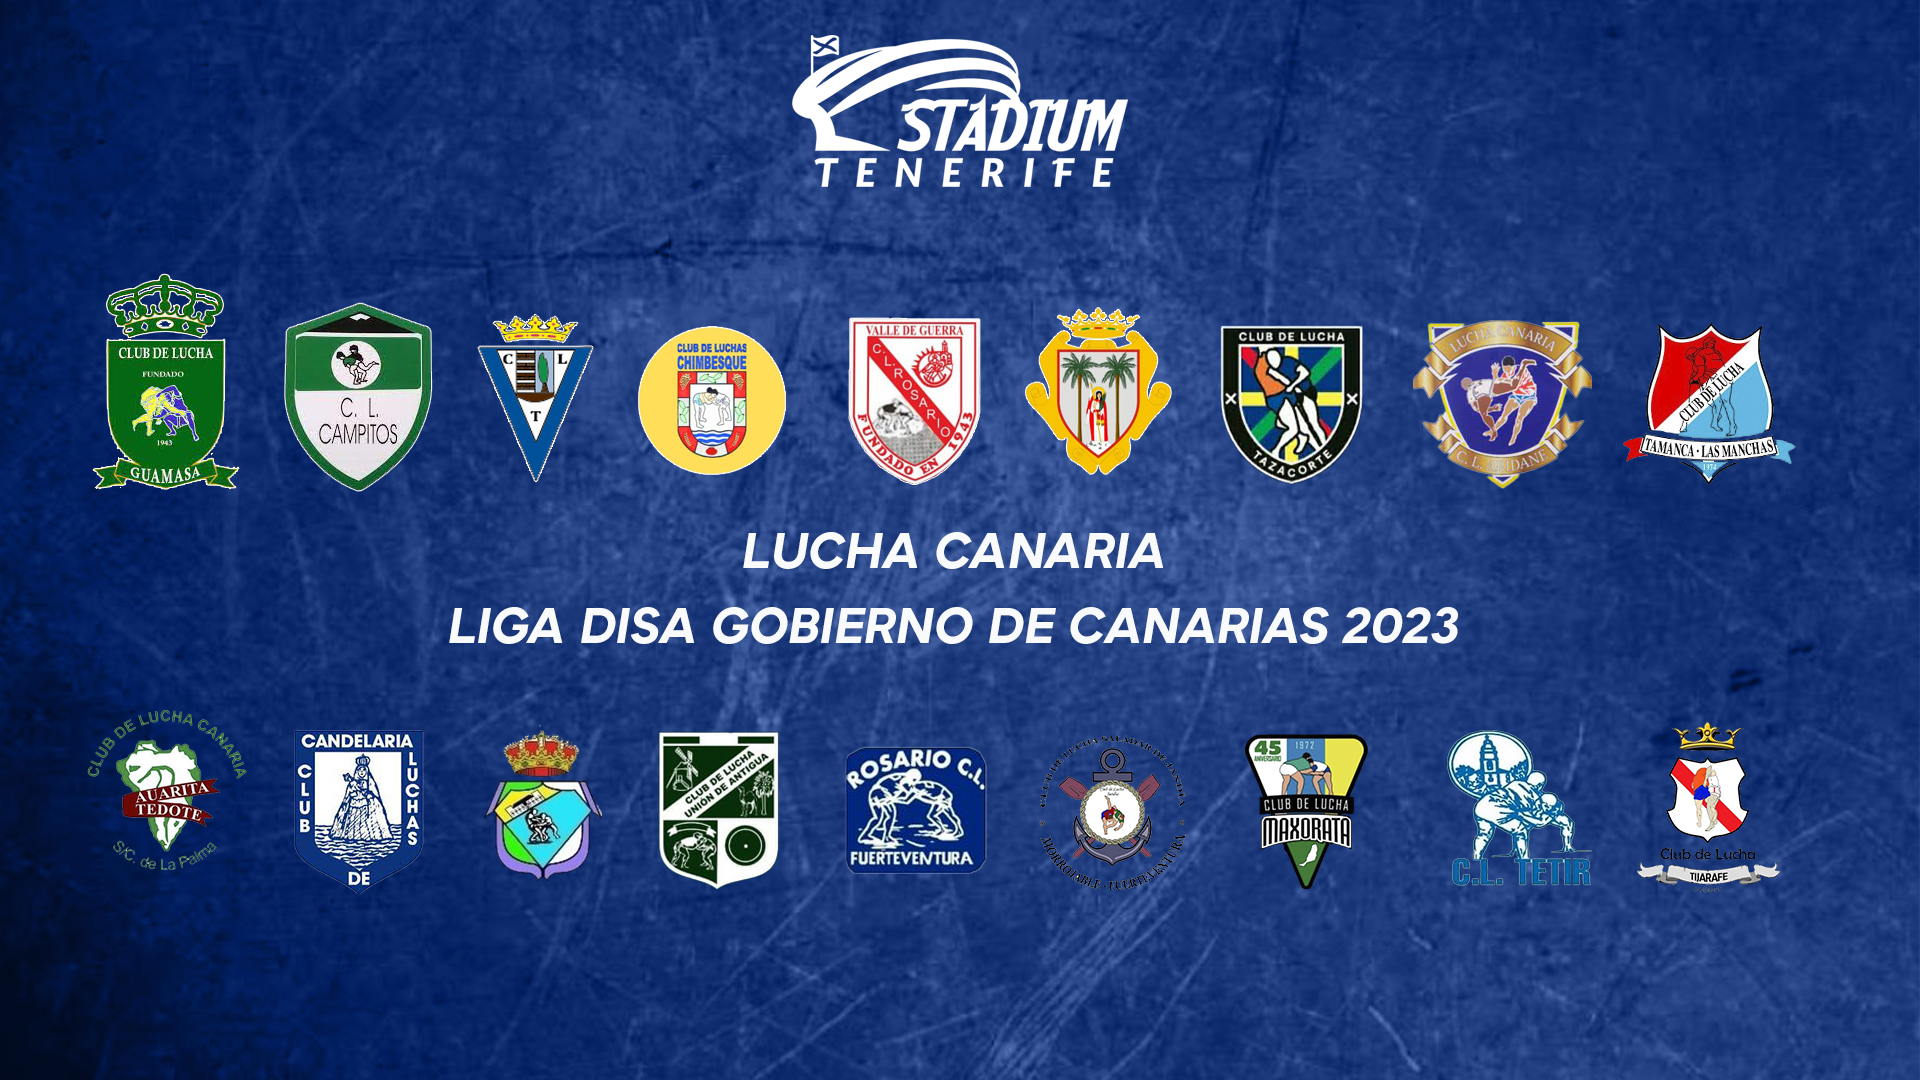 Plantillas de la Liga Disa Gobierno de Canarias de Lucha Canaria 2022-2023